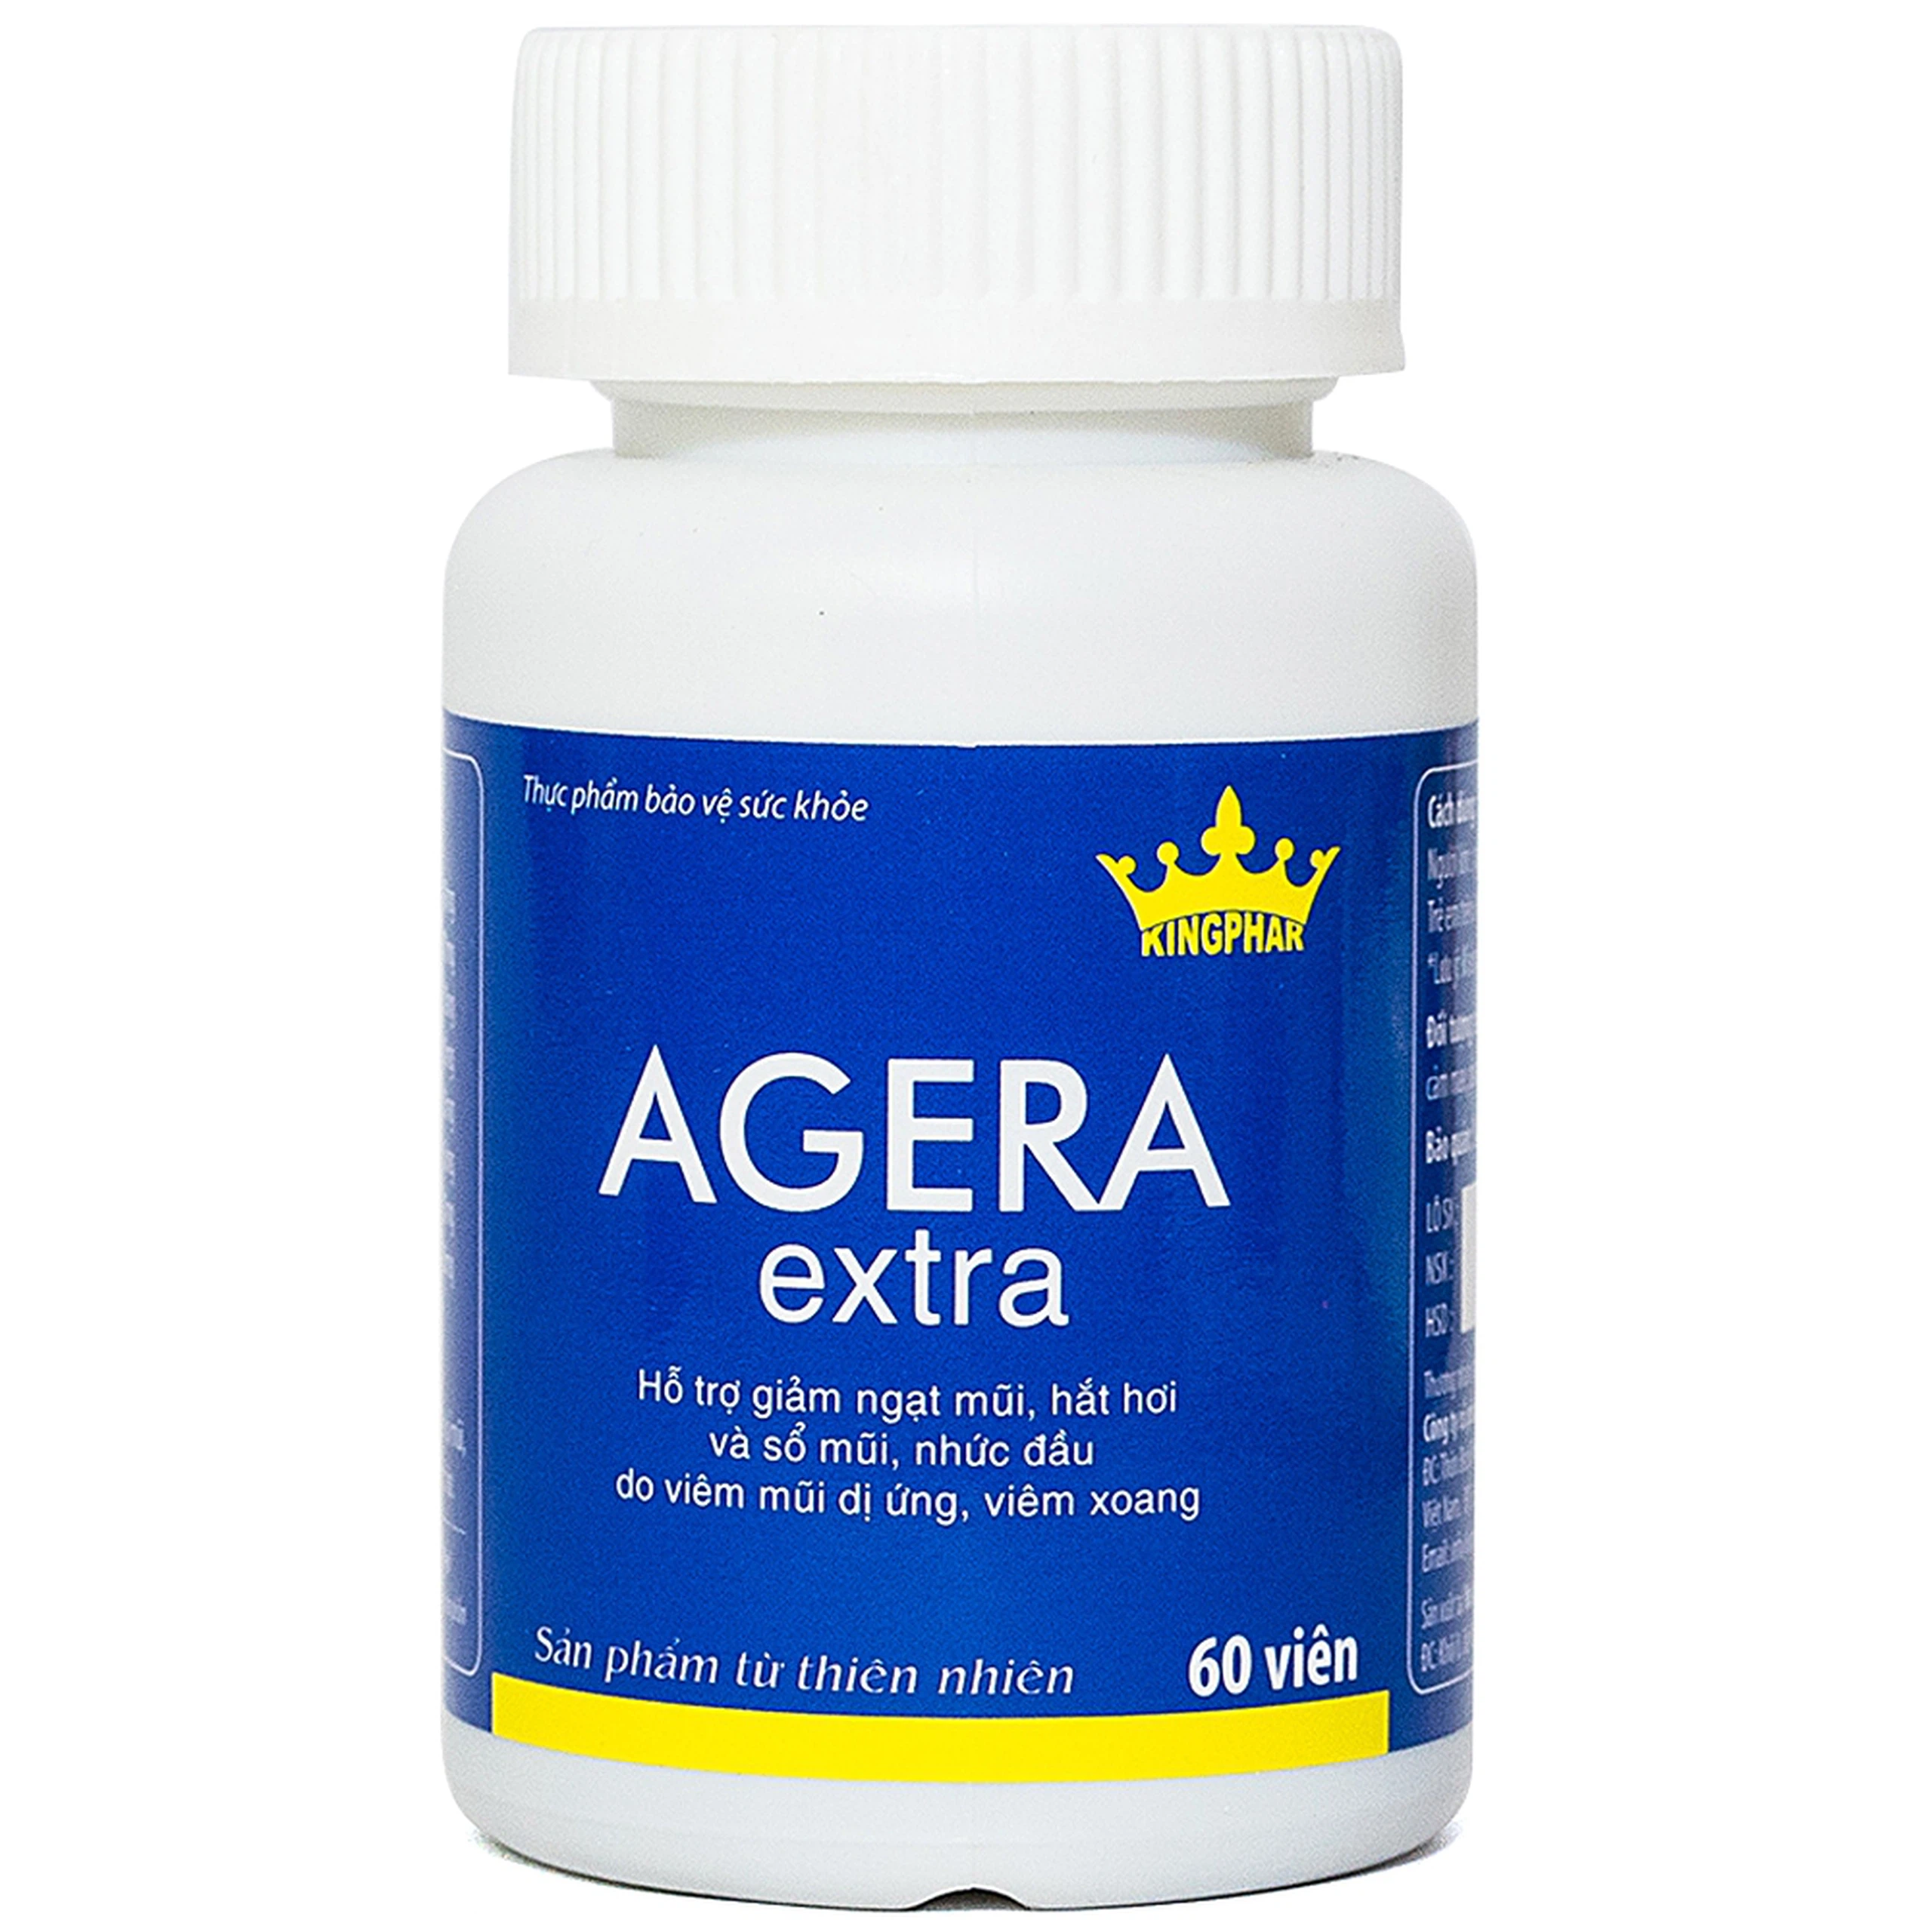 Viên uống Agera Extra Kingphar hỗ trợ giảm ngạt mũi, hắt hơi (60 viên)